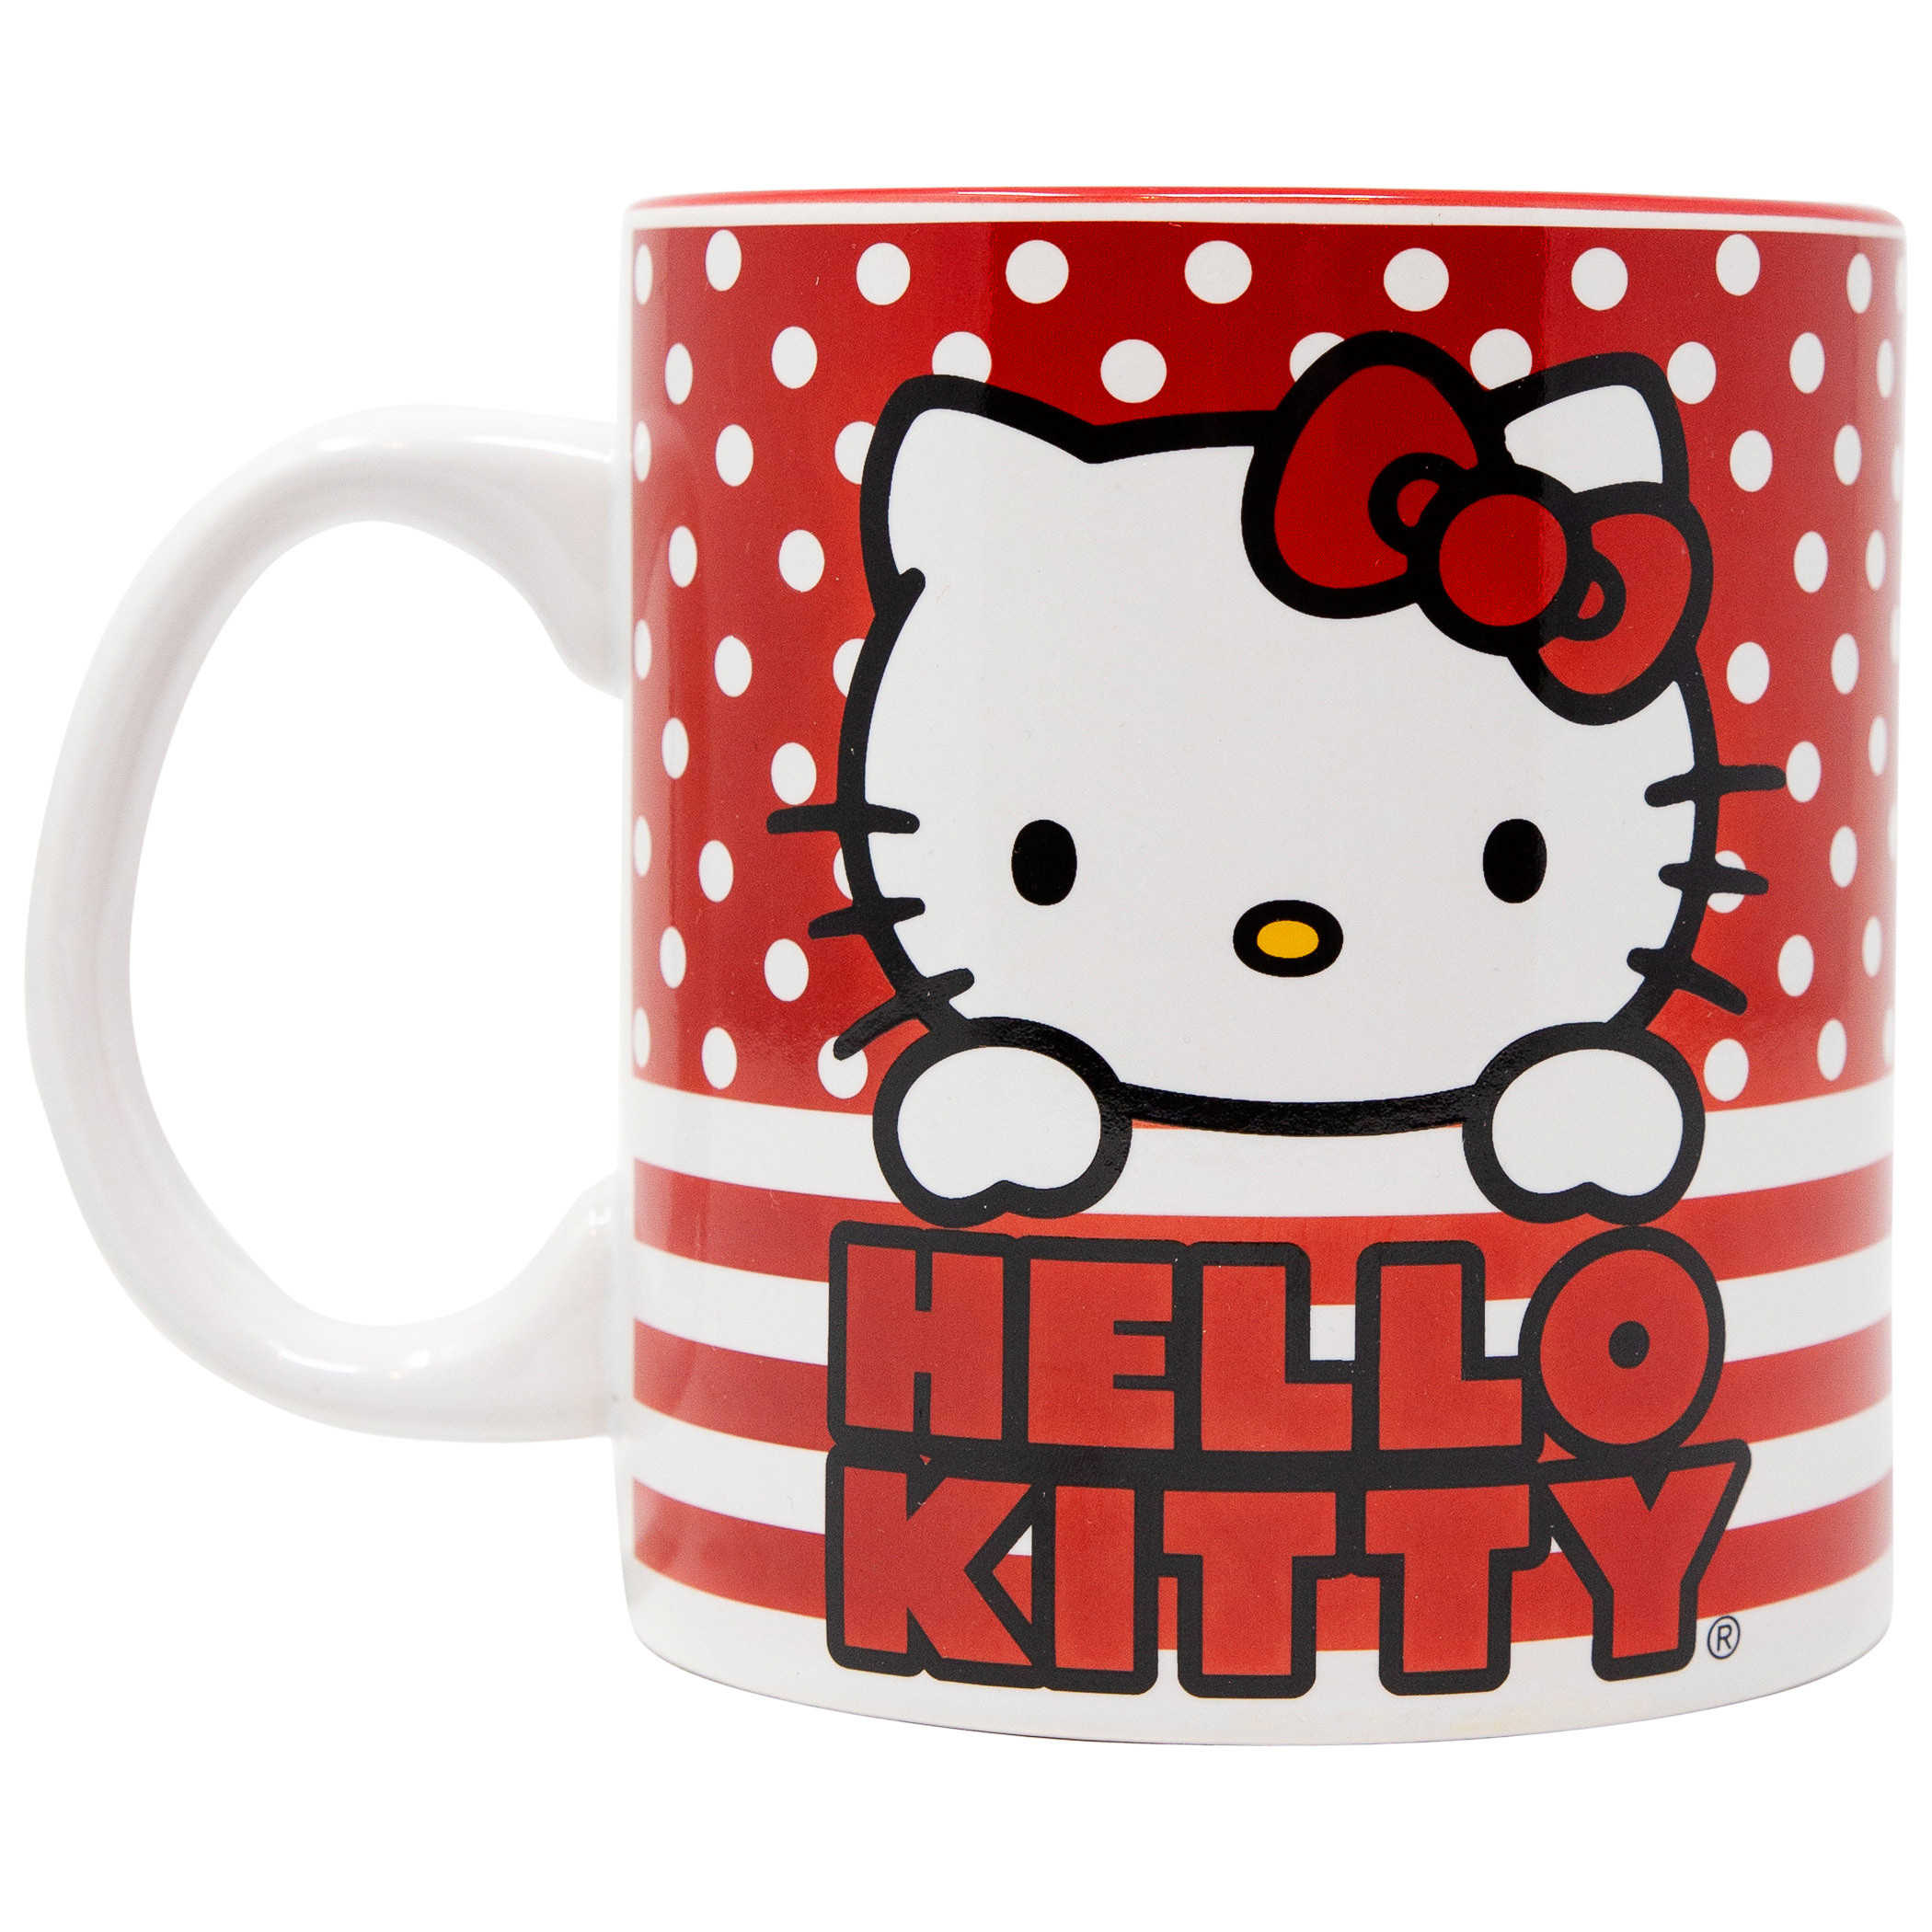 Hello Kitty 20 Ounce Ceramic Mug